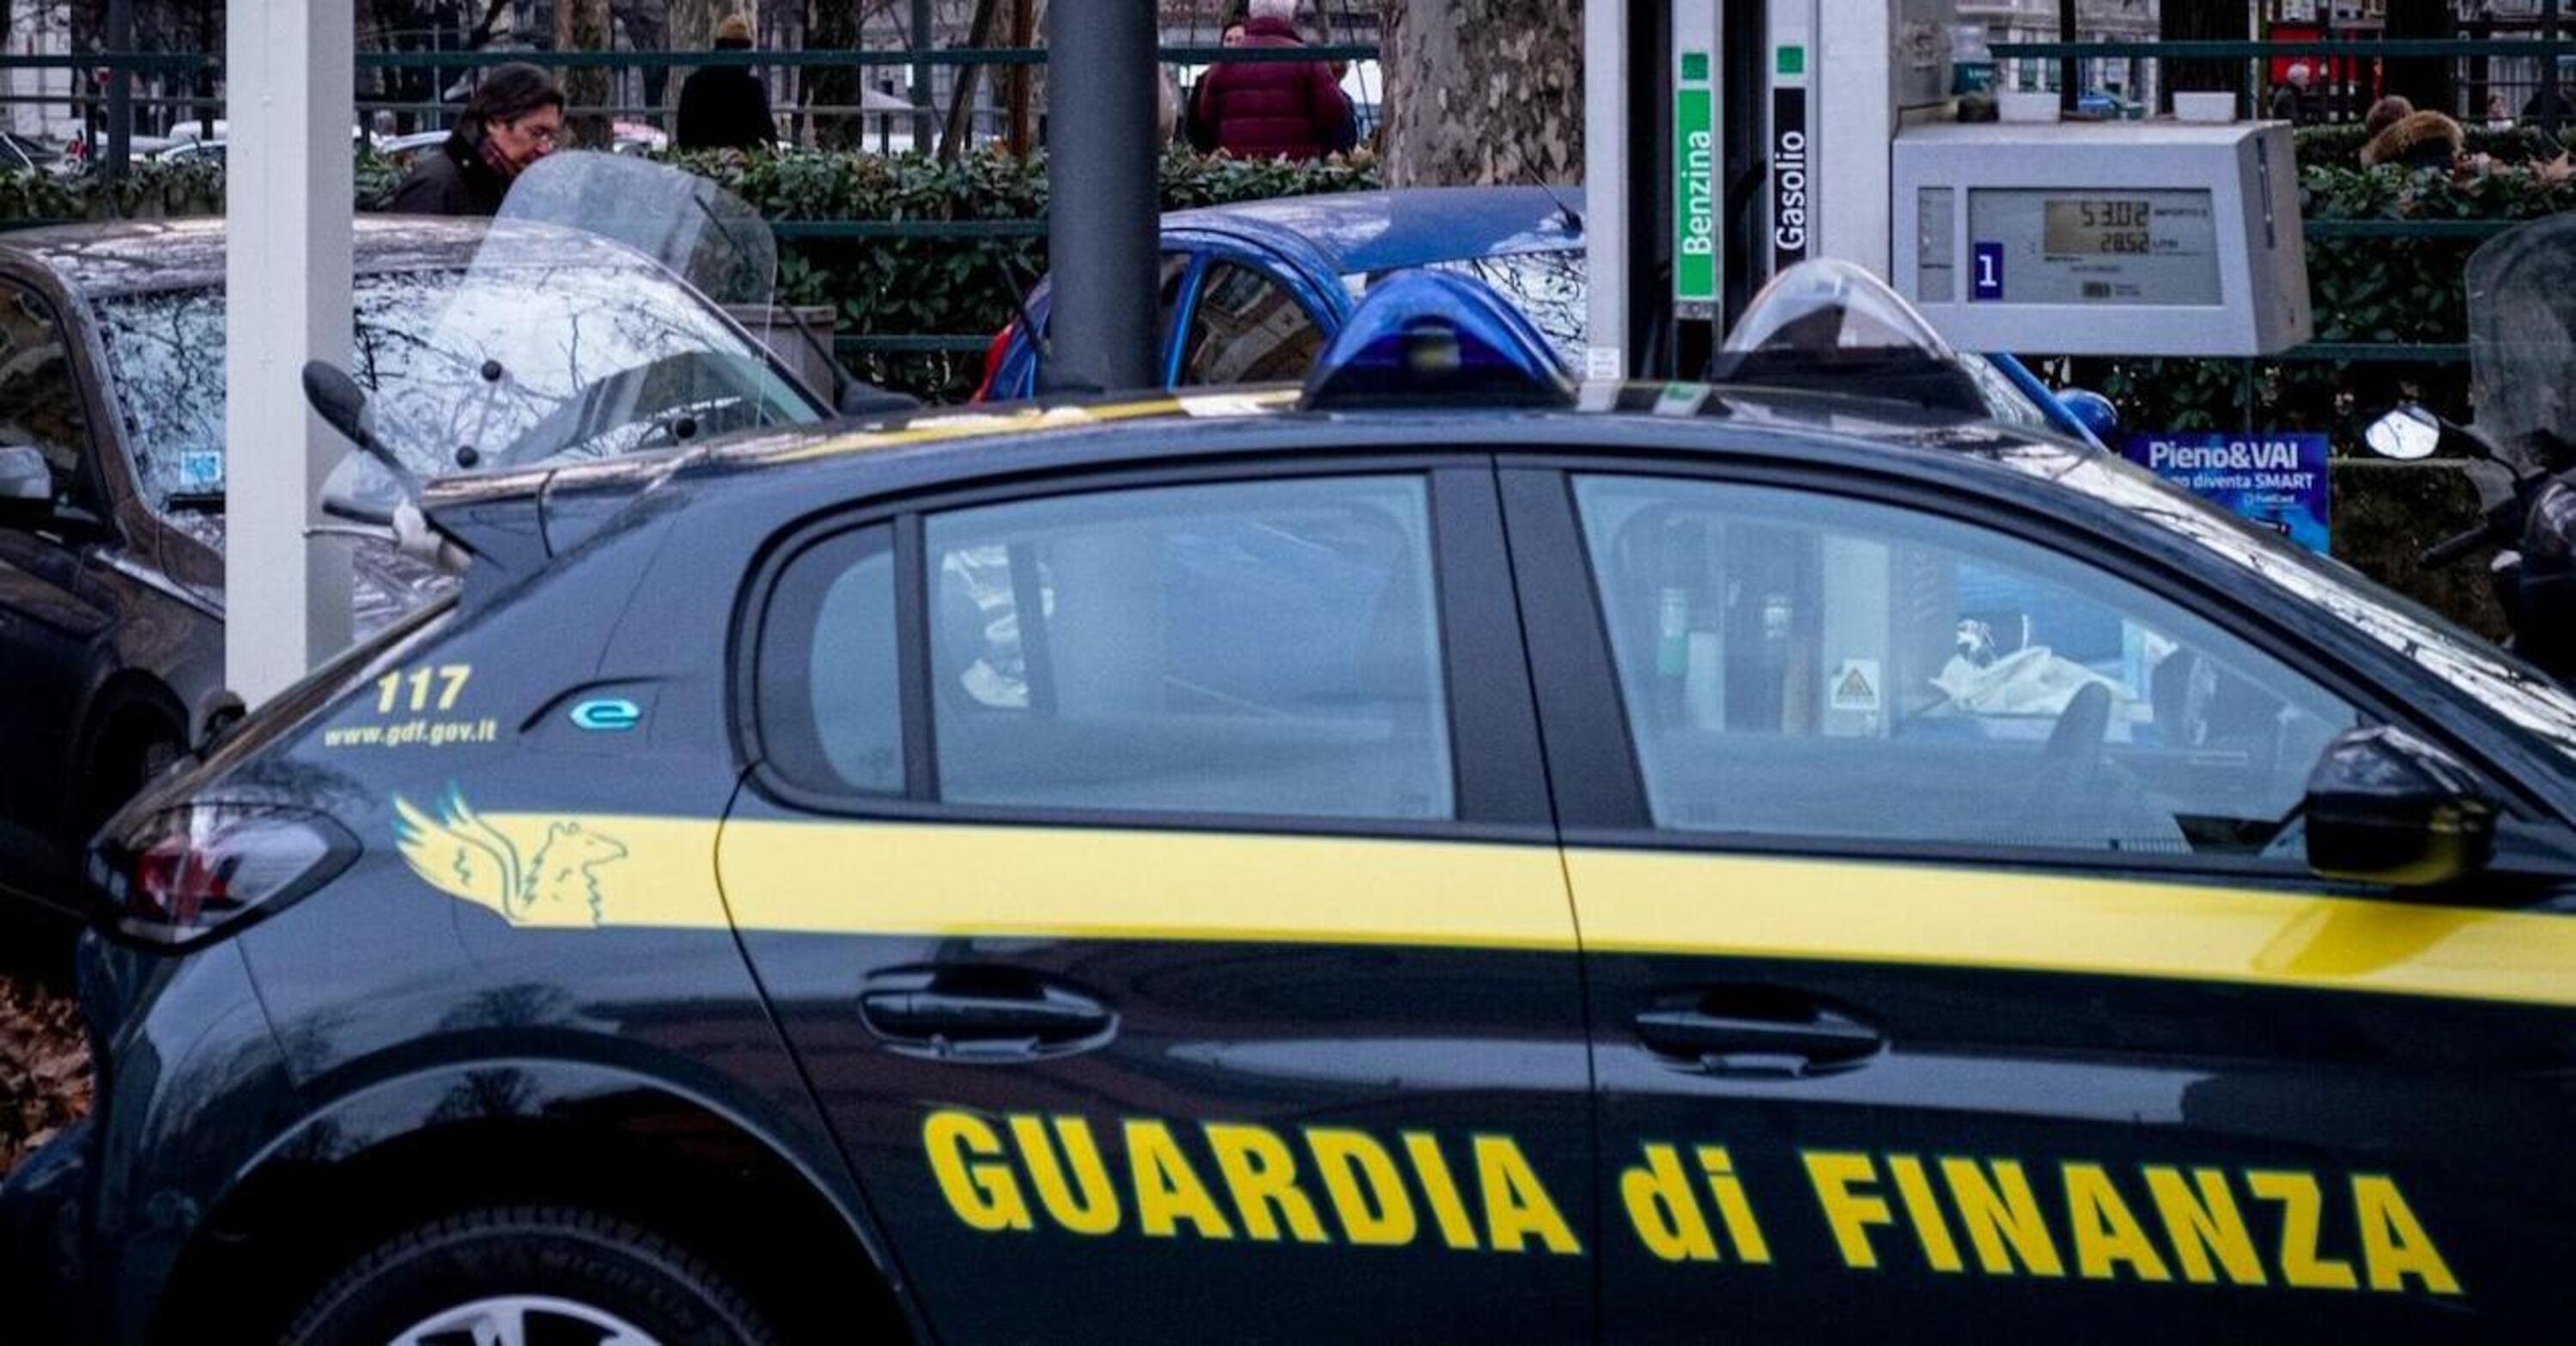 Parma. Maxi frode sulla benzina, evasi pi&ugrave; di 90 milioni di euro in cinque anni